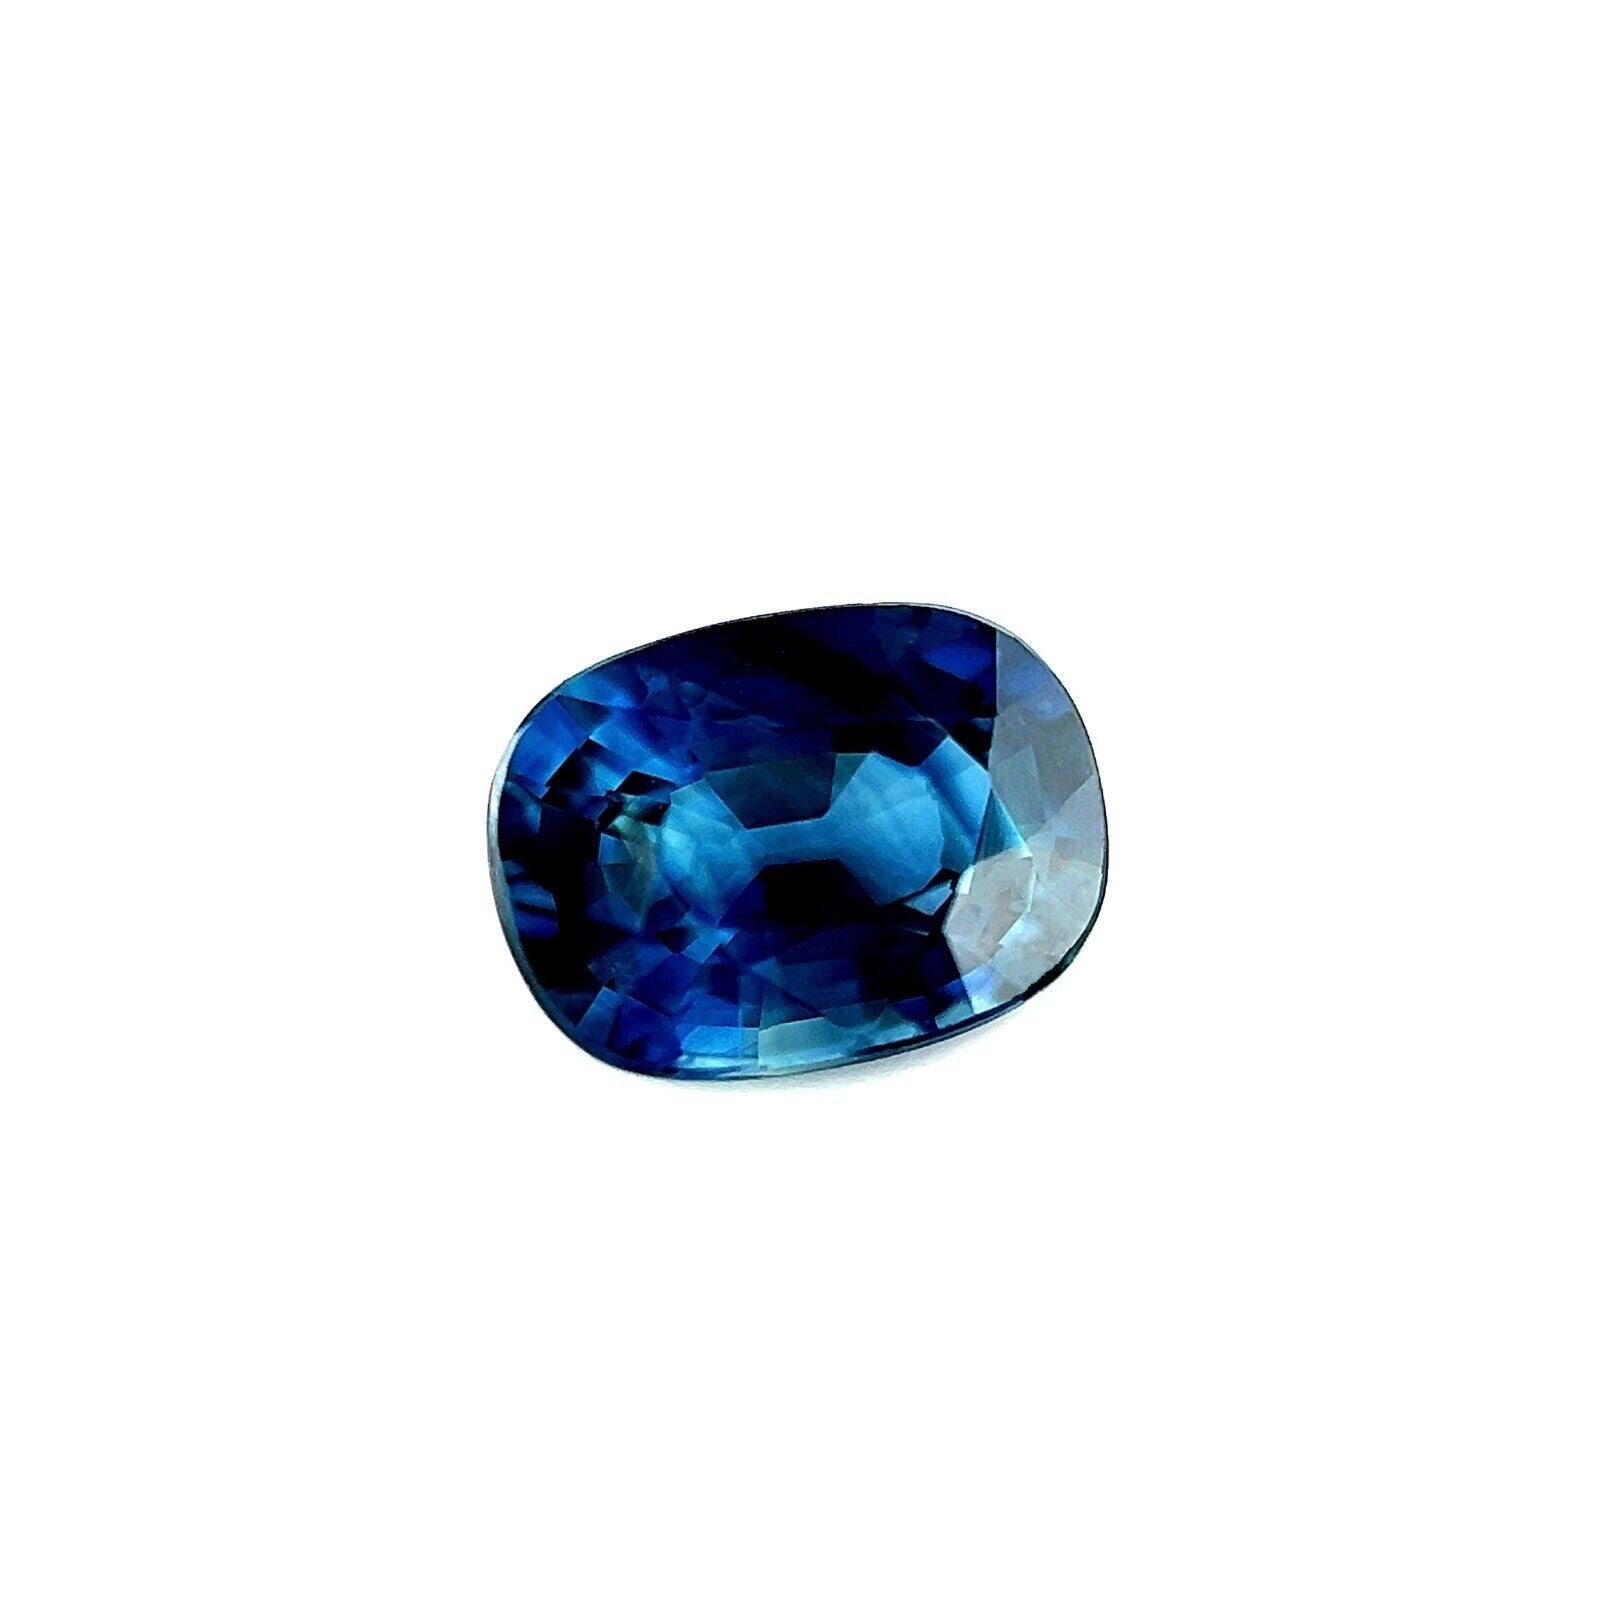 Saphir bleu sarcelle naturel taille coussin de 0,87 carat, pierre précieuse australienne